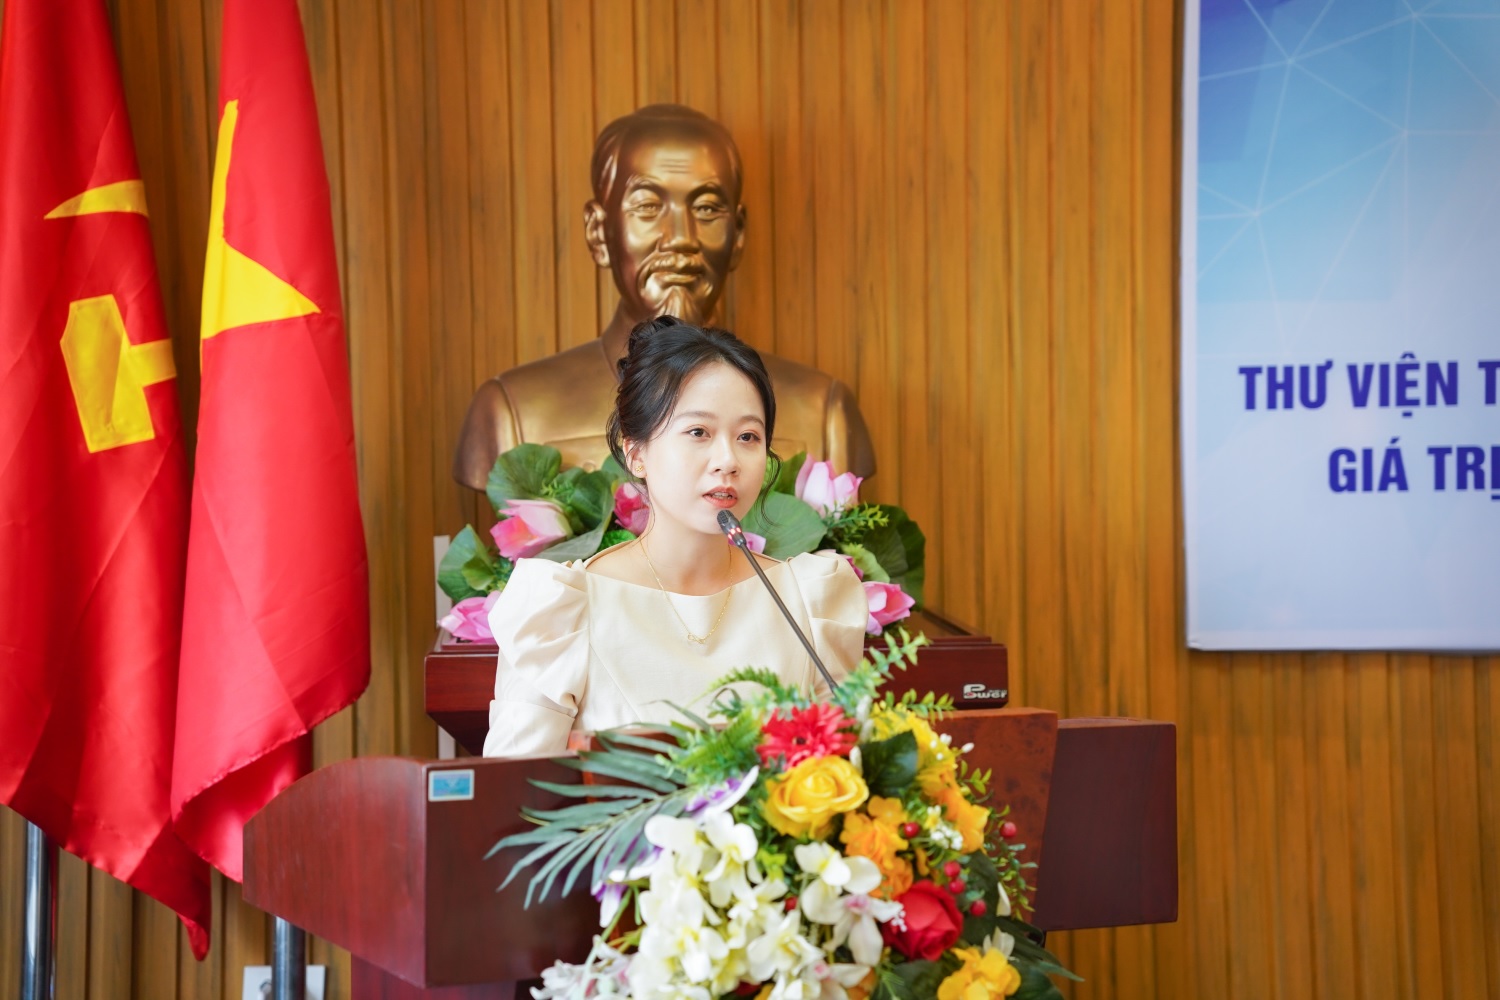 Cựu sinh viên Luật K18 Học viện Hành chính Quốc gia Nguyễn Thị Huyền Trang, hiện đang công tác tại Khoa Kinh tế Tài nguyên và Môi trường (Trường Đại học Tài nguyên và Môi trường Hà Nội) trình bày tham luận (Đề xuất nâng cao văn hóa đọc trong sinh viên) tại Hội nghị.